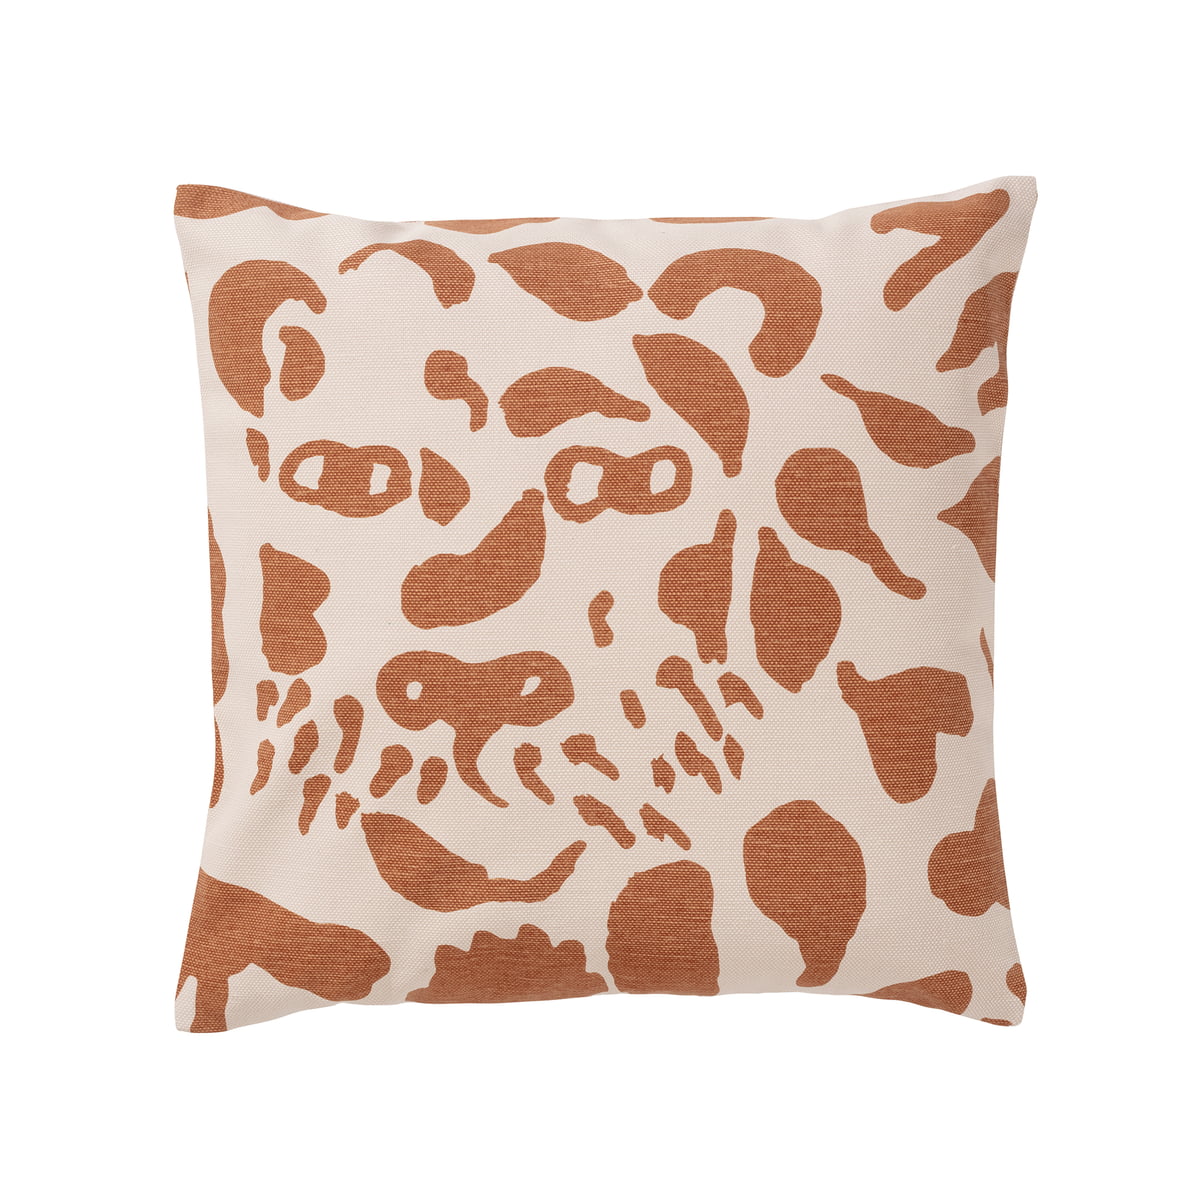 iittala - oiva toikka taie d'oreiller, 47 x 47 cm, cheetah marron / blanc